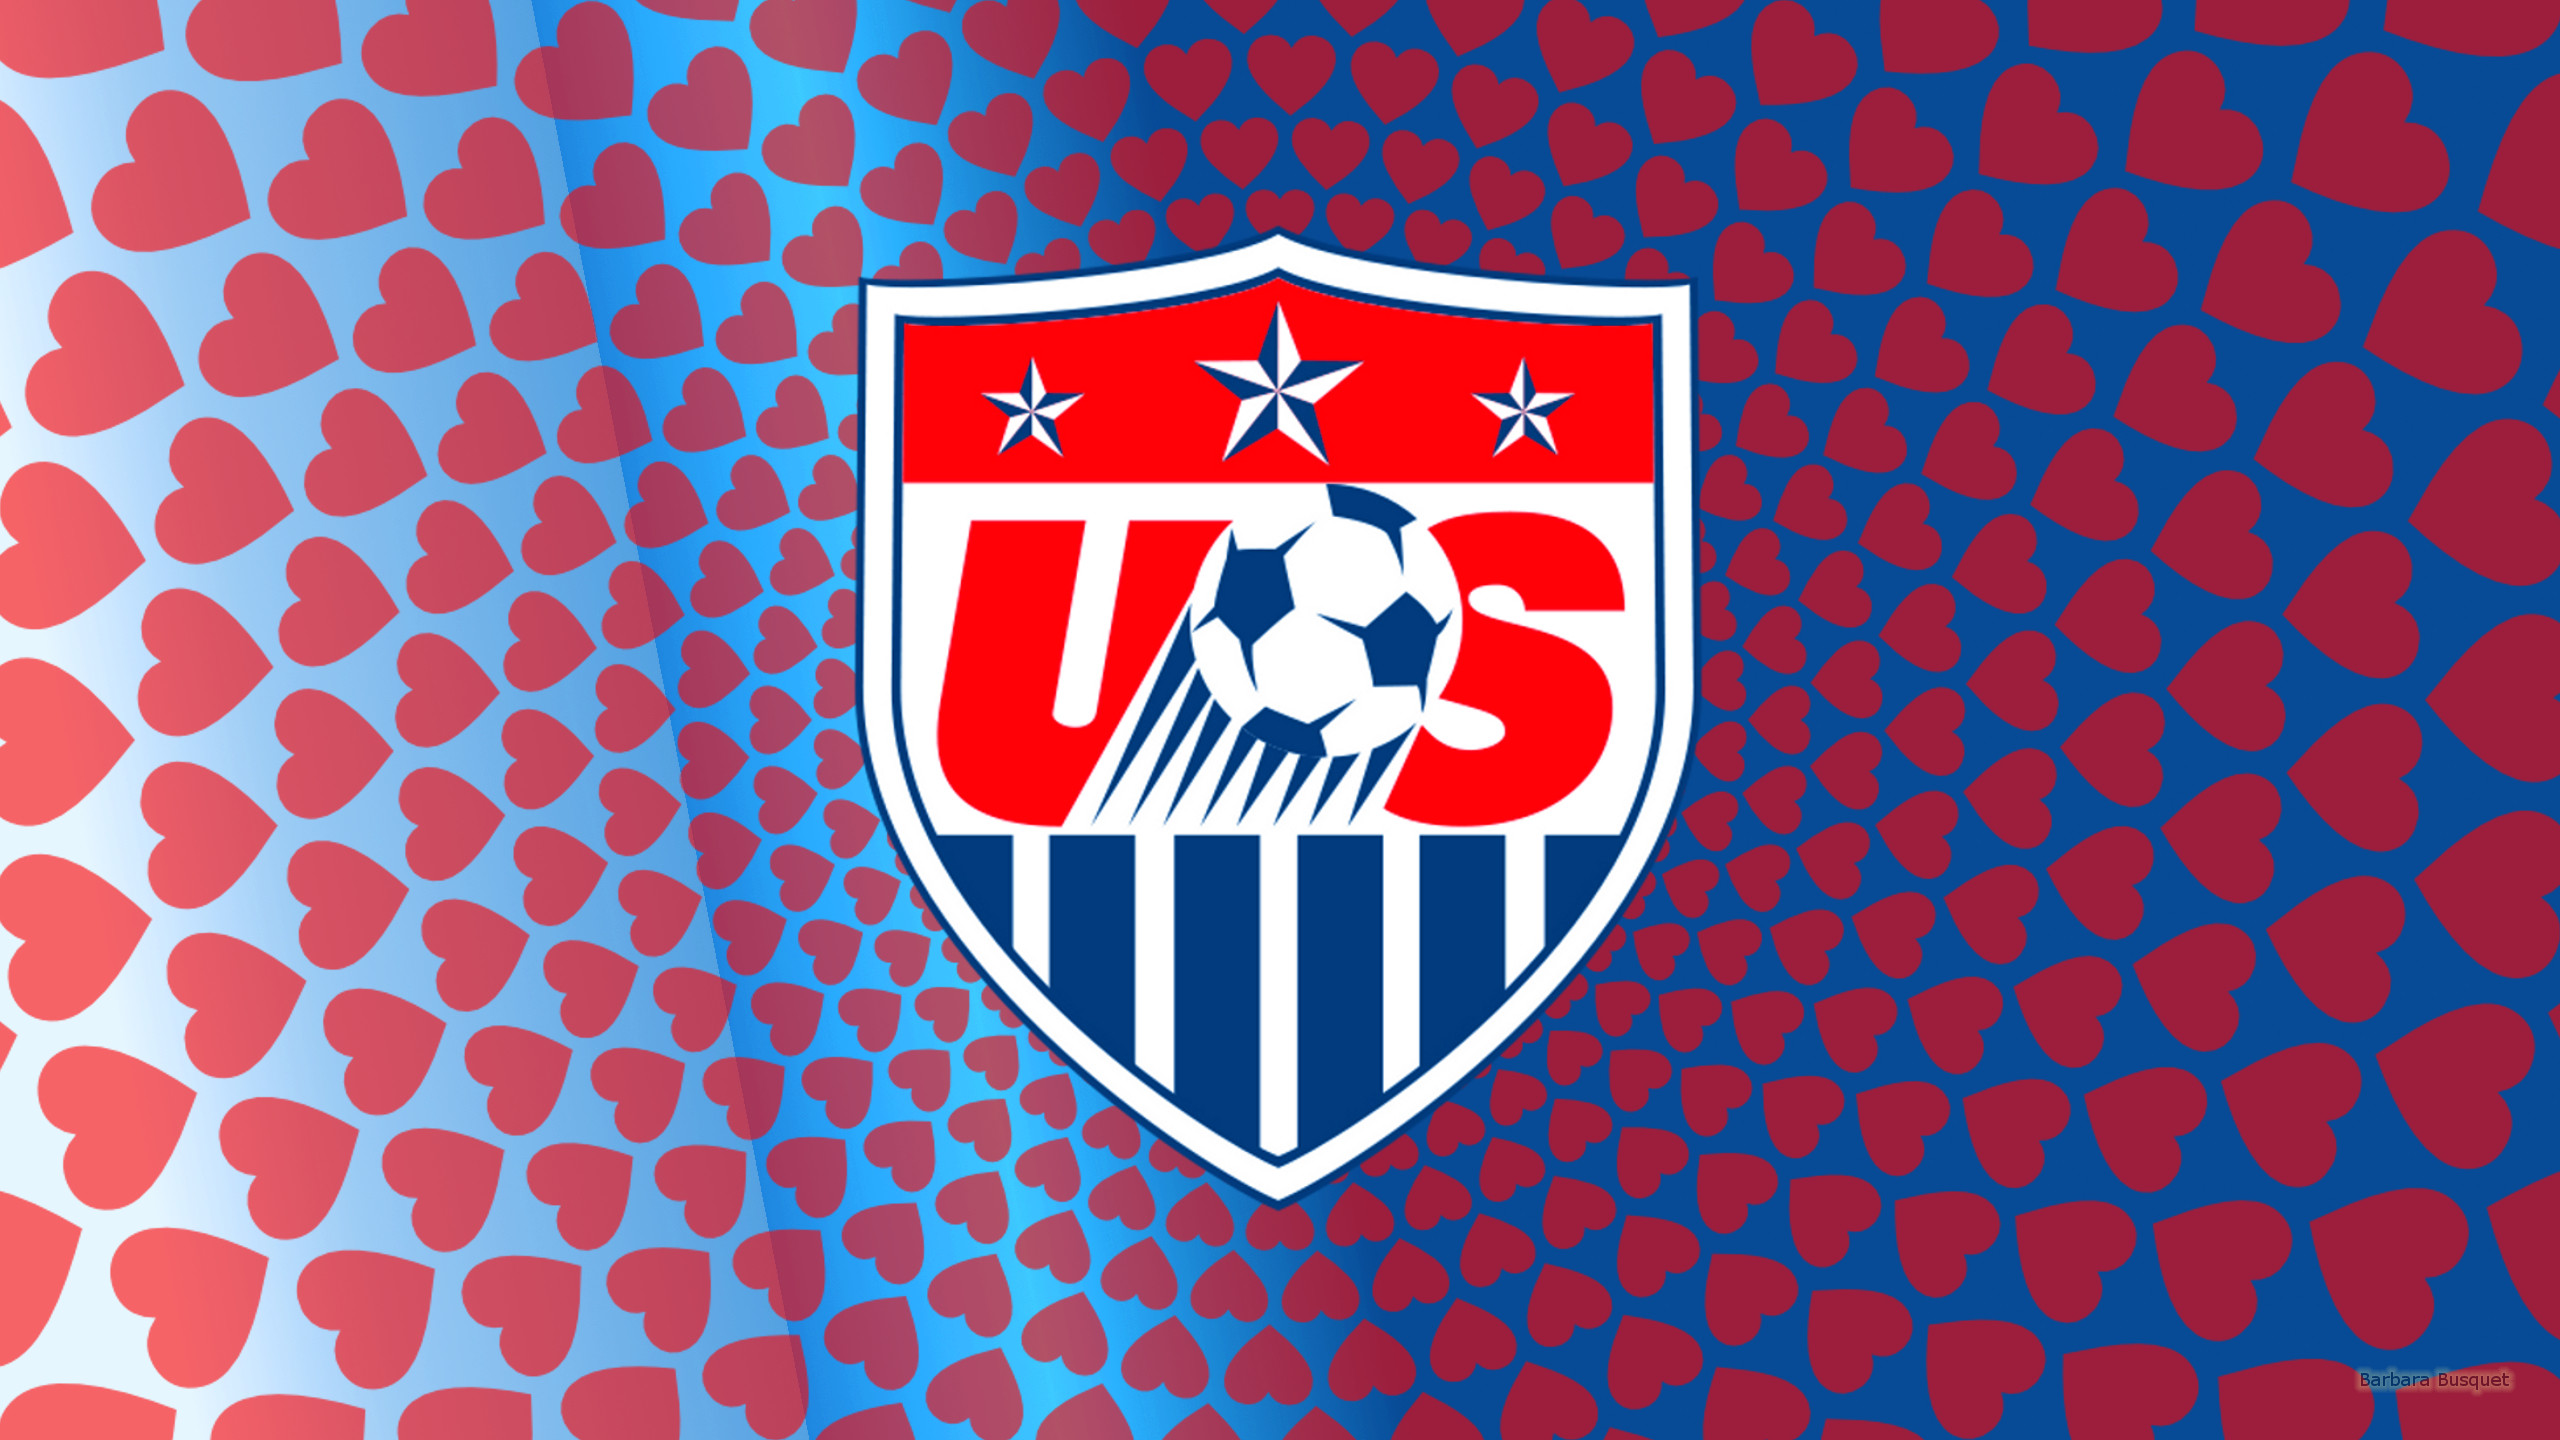 usa soccer wallpaper,emblem,flag,crest,logo,symbol